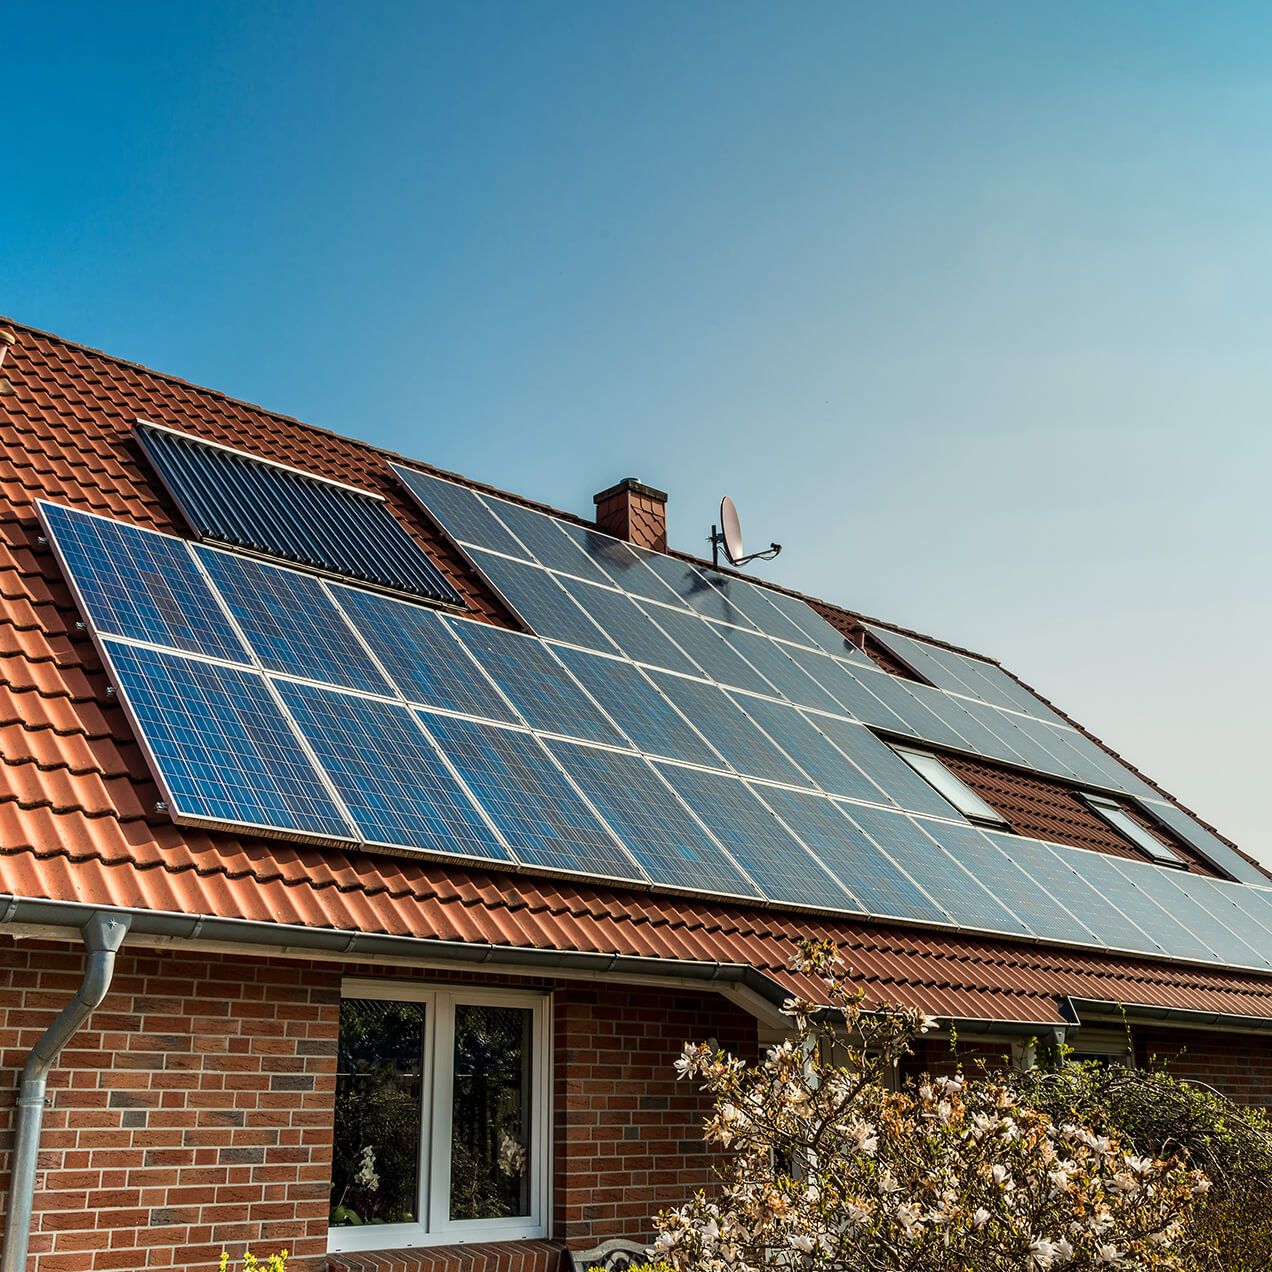 Einfamilienhaus mit Ziegeldach, ausgestattet mit Photovoltaik-Solarpaneelen. Der Einsatz erneuerbarer Energien zeigt Engagement für die Umwelt.